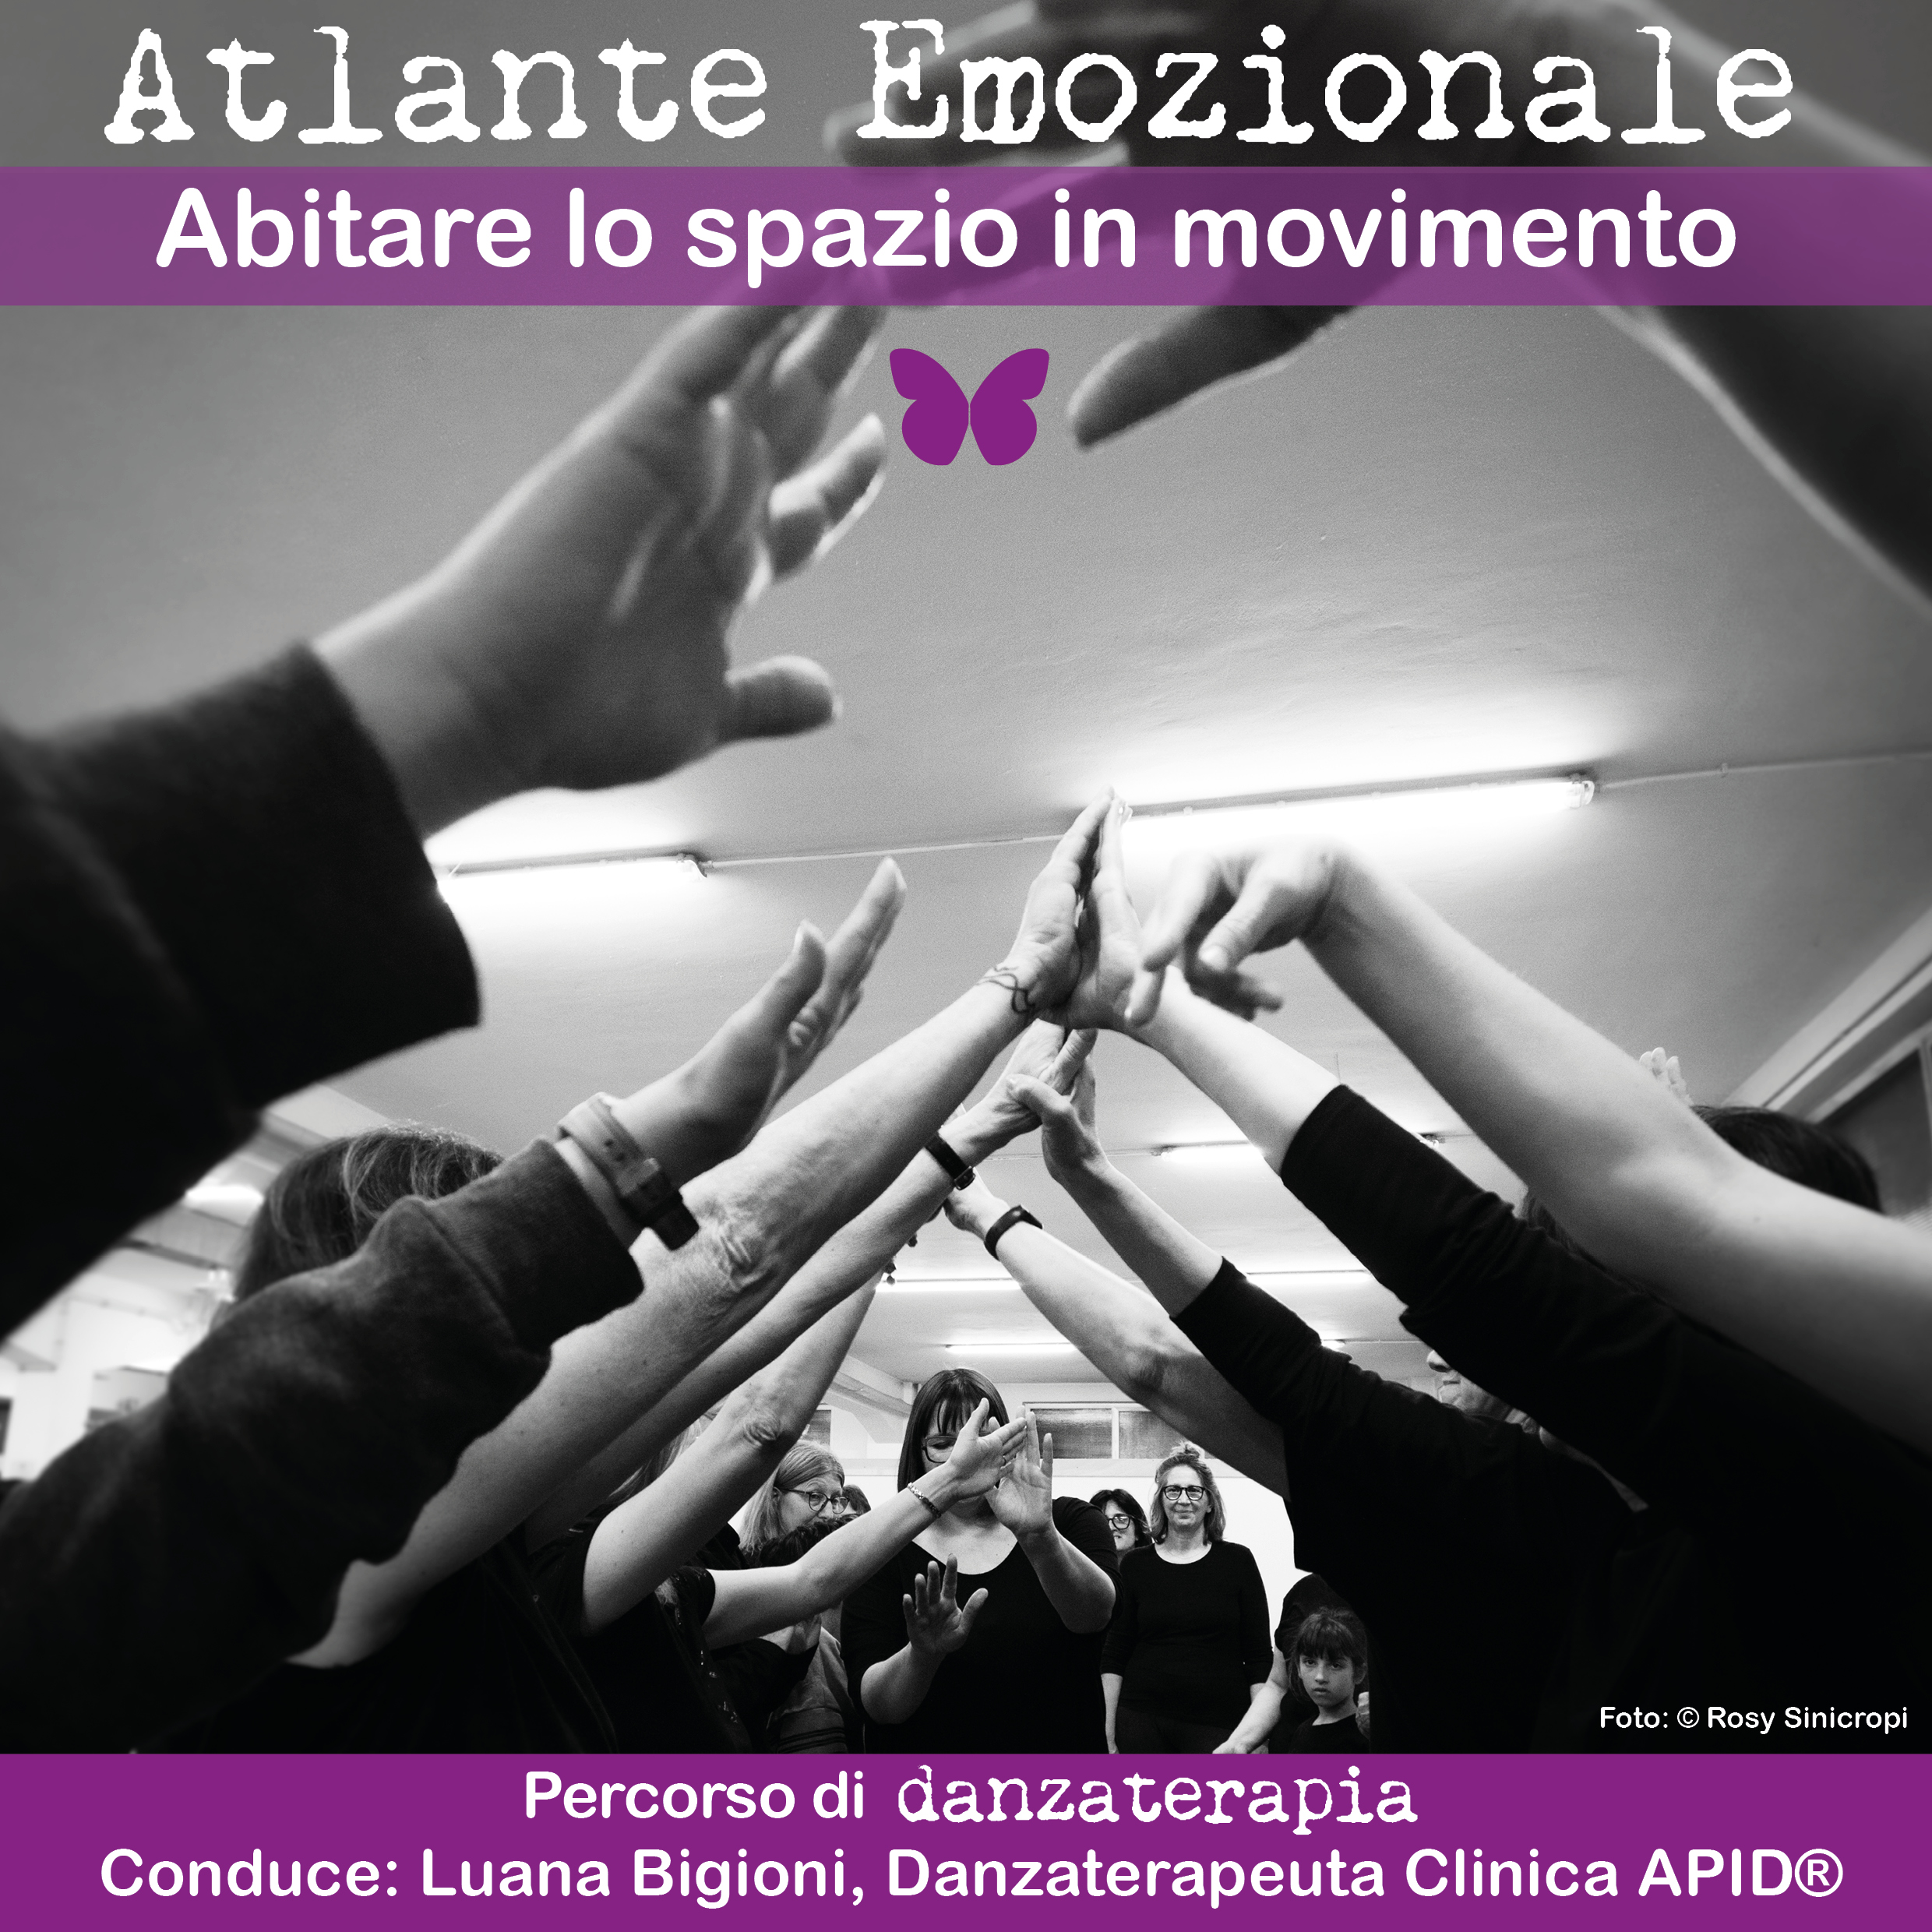 atlante emozionale_danzaterapia_azione1